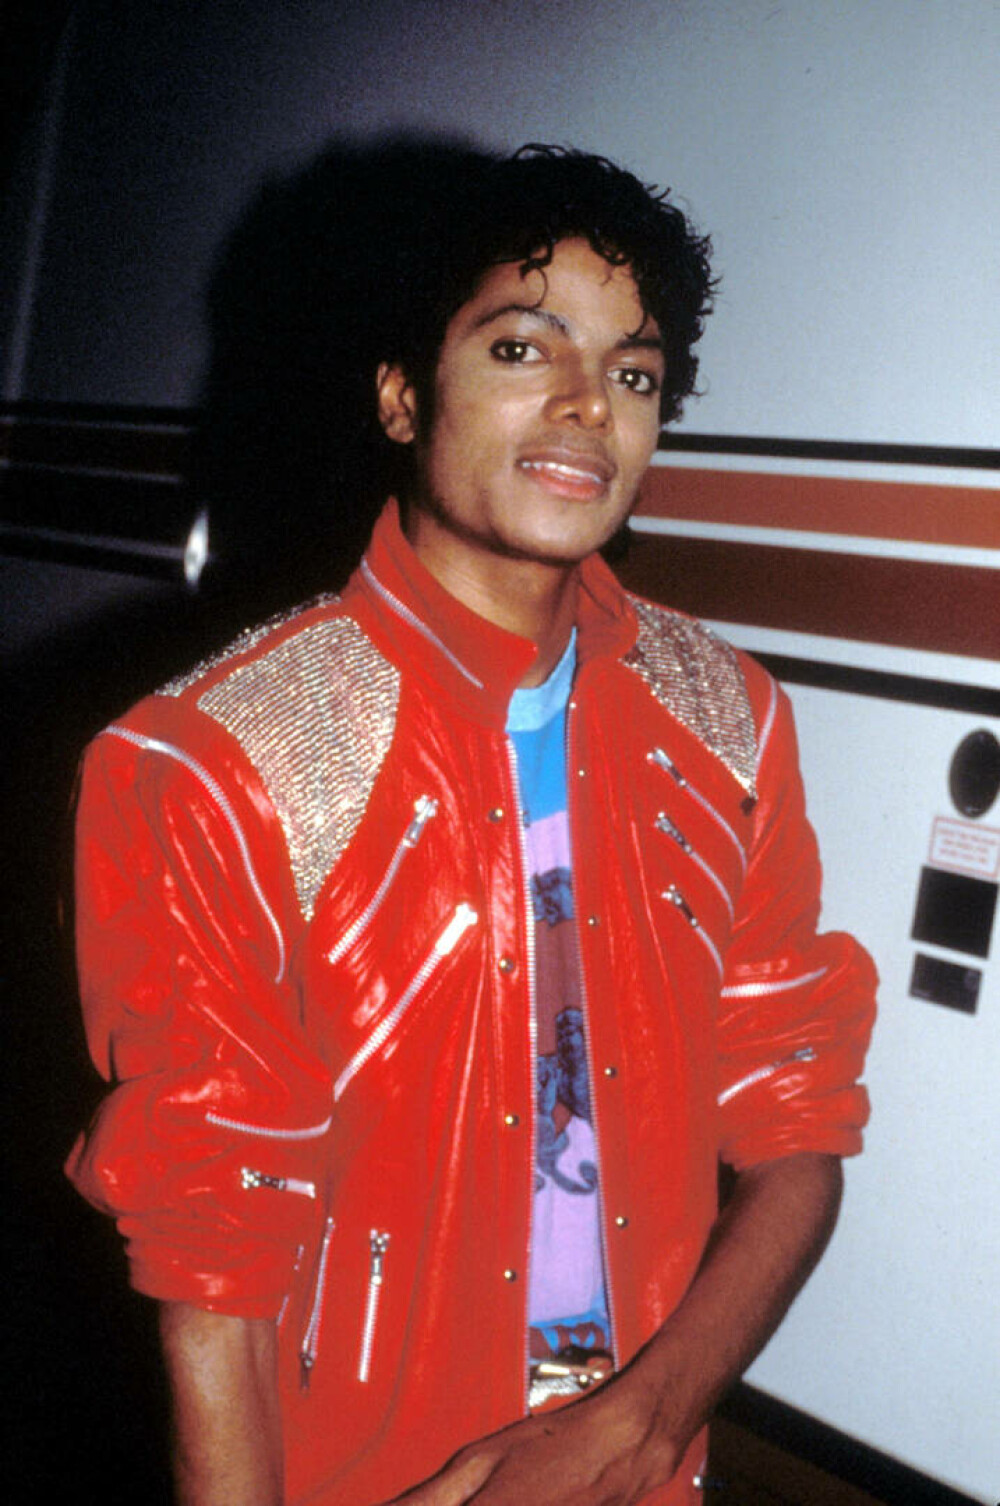 Imagini de colecție cu Michael Jackson. Regele muzicii pop ar fi împlinit 65 de ani | GALERIE FOTO - Imaginea 40